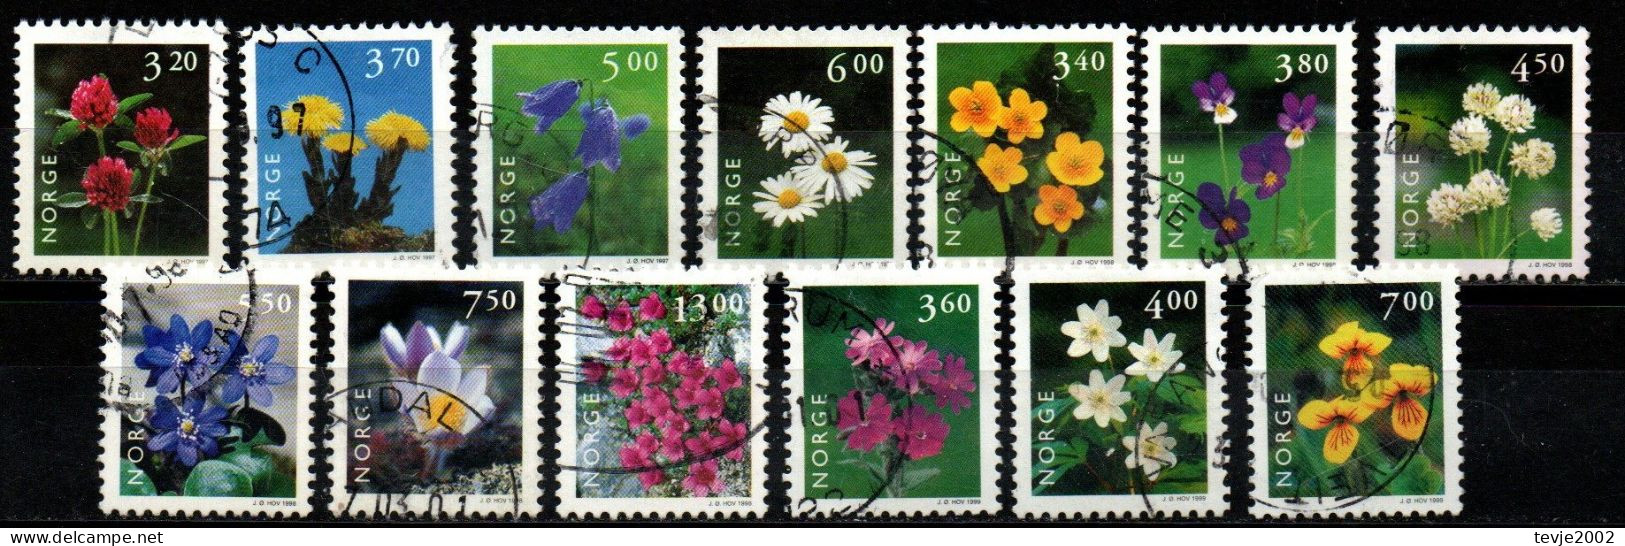 Norwegen Norge 1997 - 1999 - Freimarken Blumen - Gestempelt Used - Usati